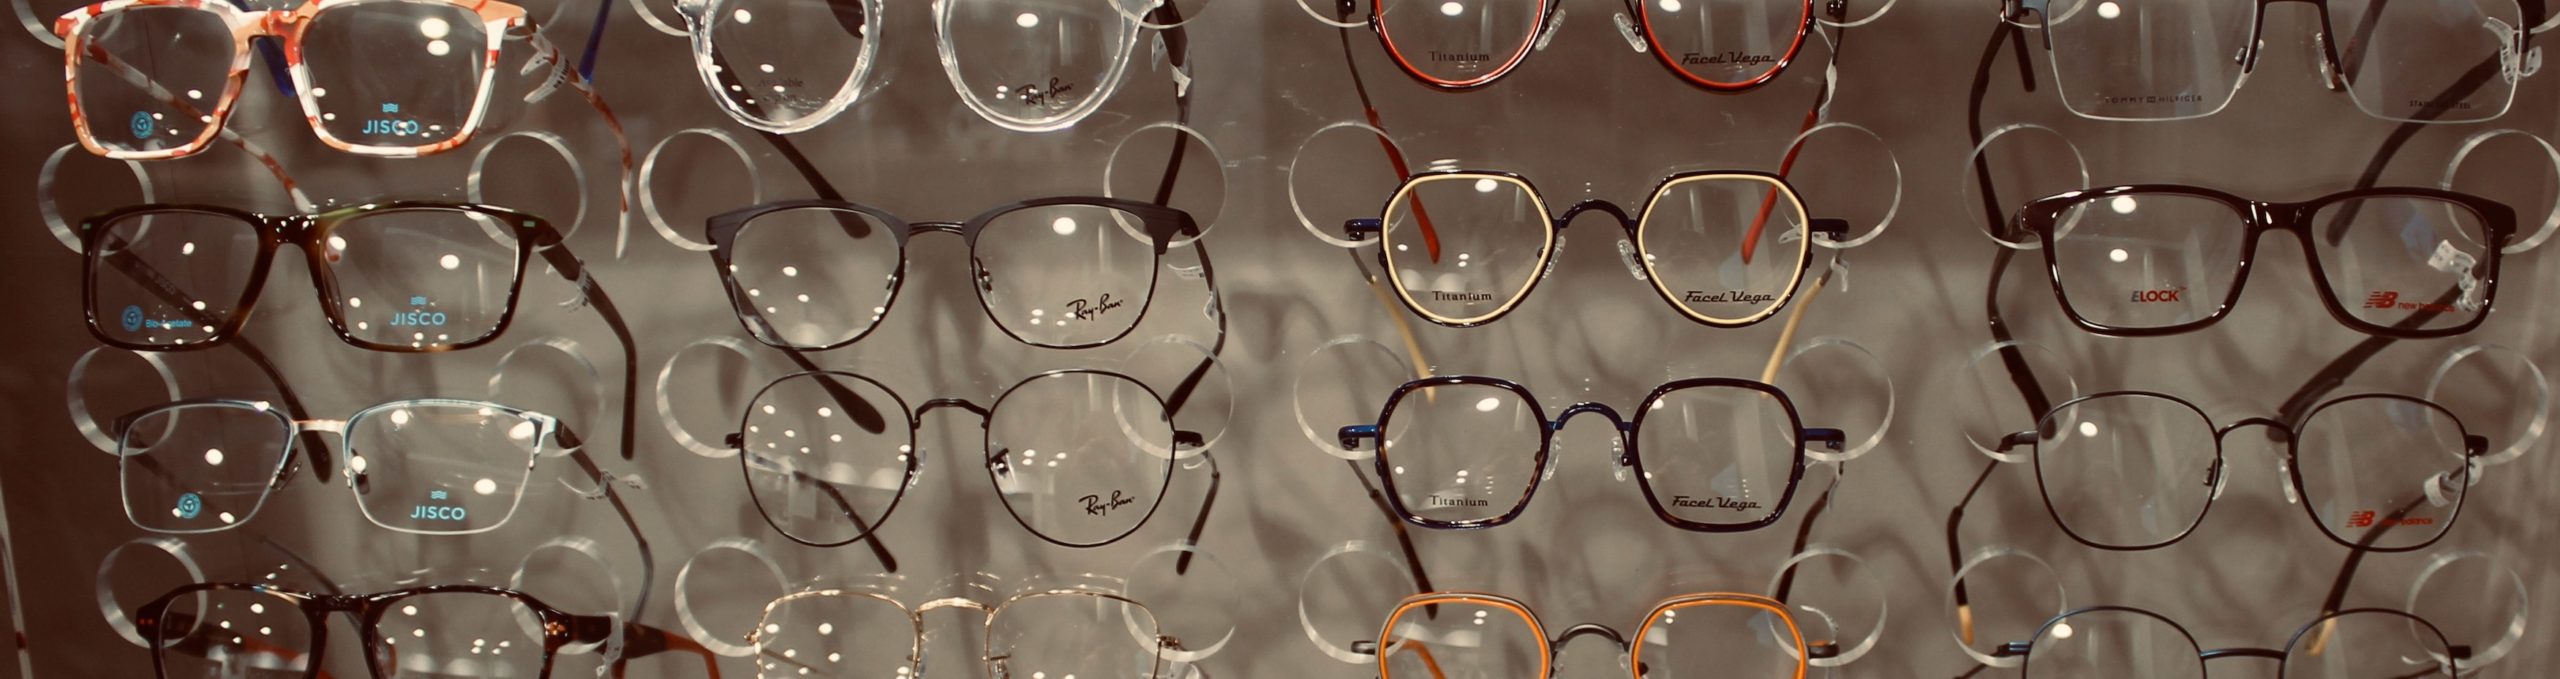 collections lunettes homme femme enfant jp optic coutances